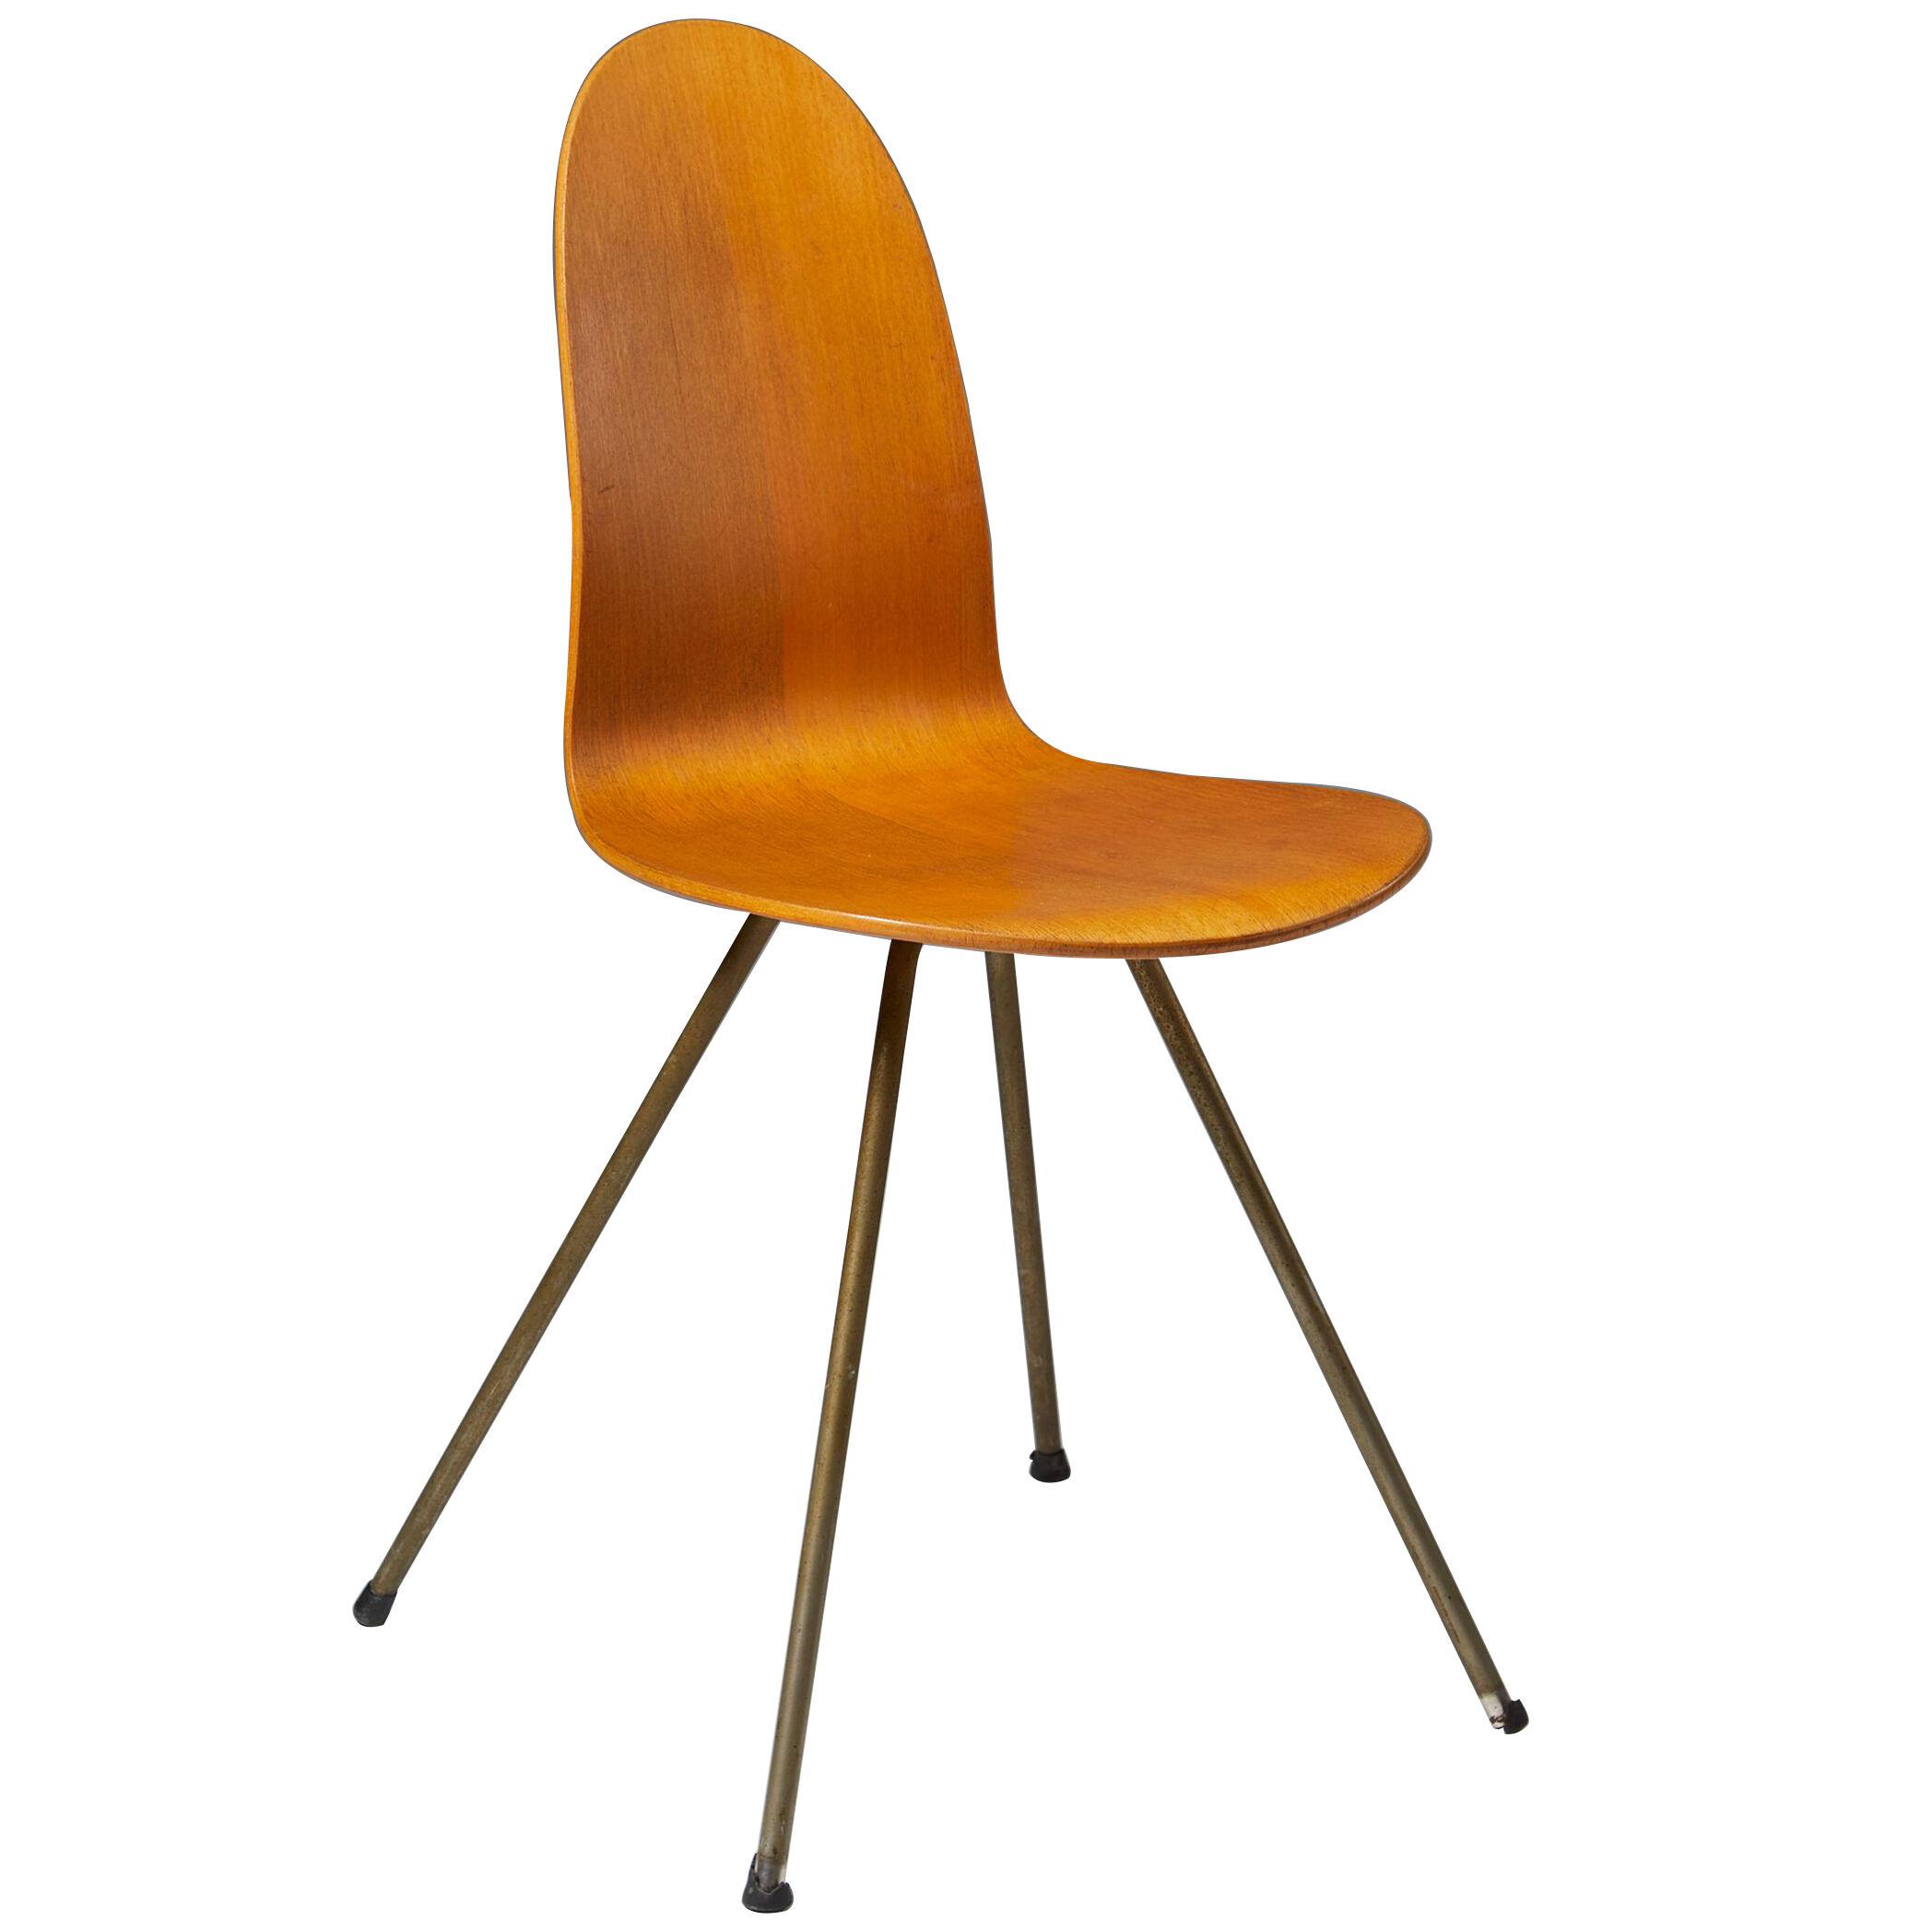 Chair ‘The Tongue’ designed by Arne Jacobsen for Fritz Hansen, Denmark. 1955.